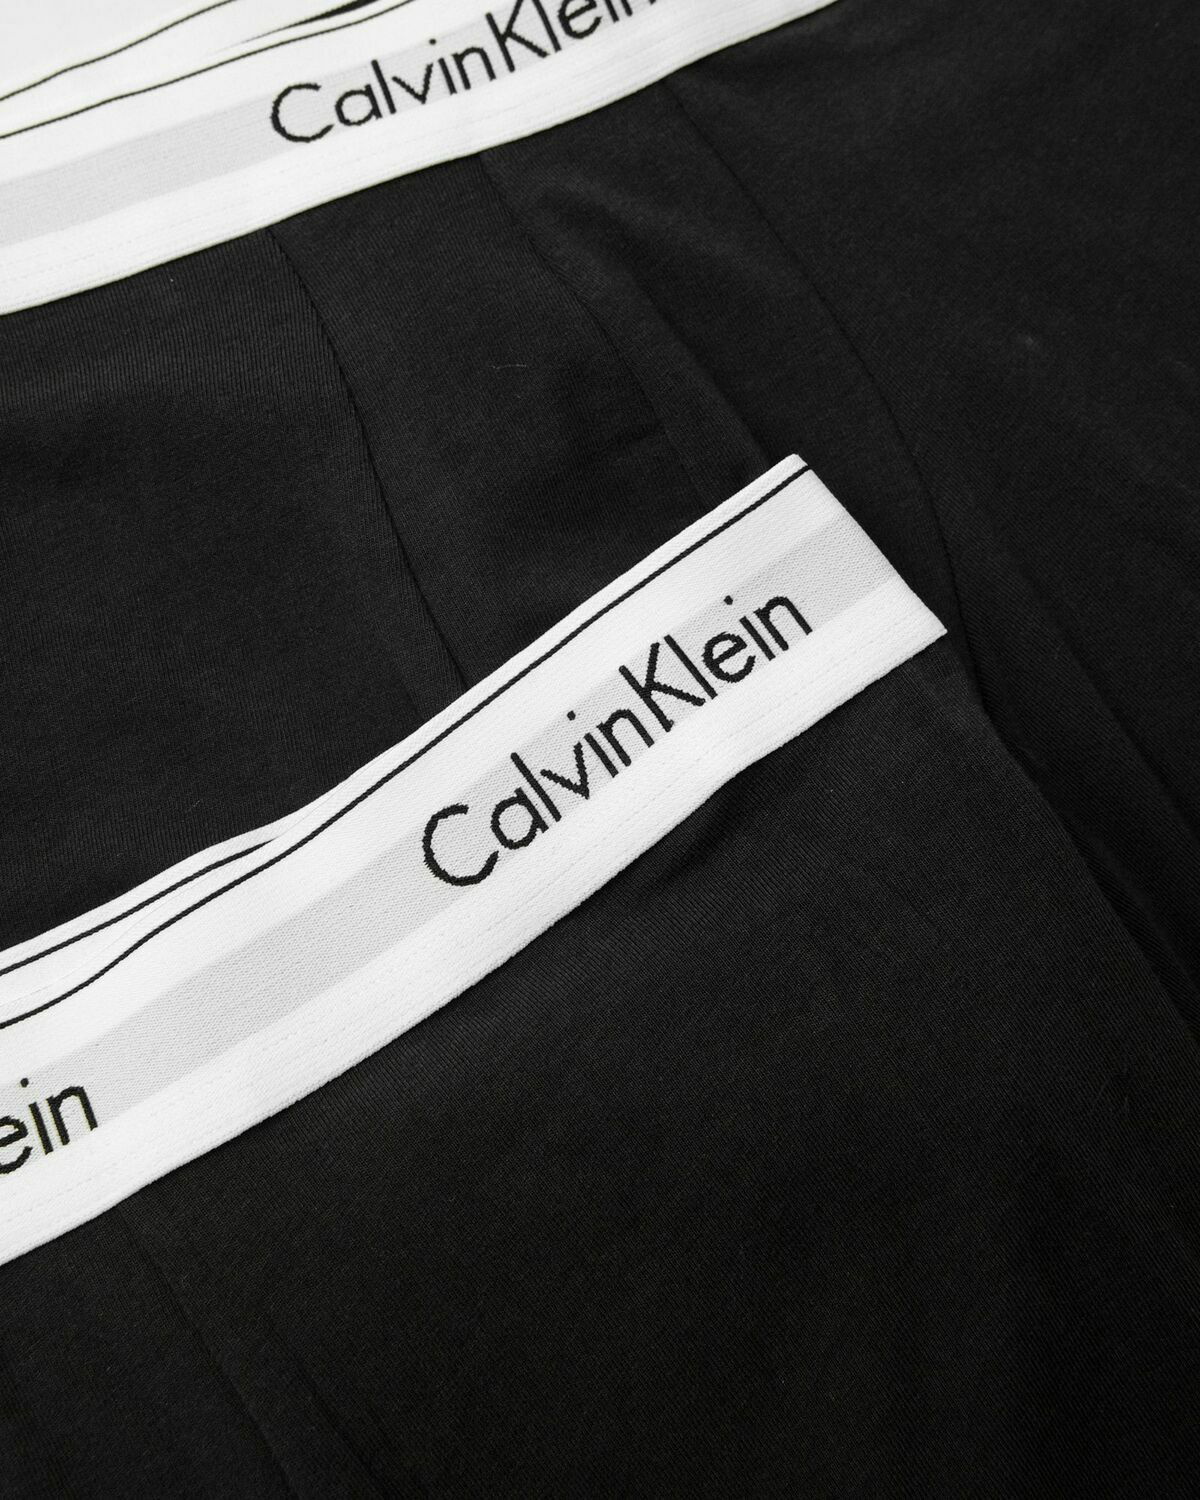 Calvin Klein Underwear MODERN COTTON STRETCH BOXER BRIEF 3-PACK Black -  BLACK/ BLACK/ BLACK